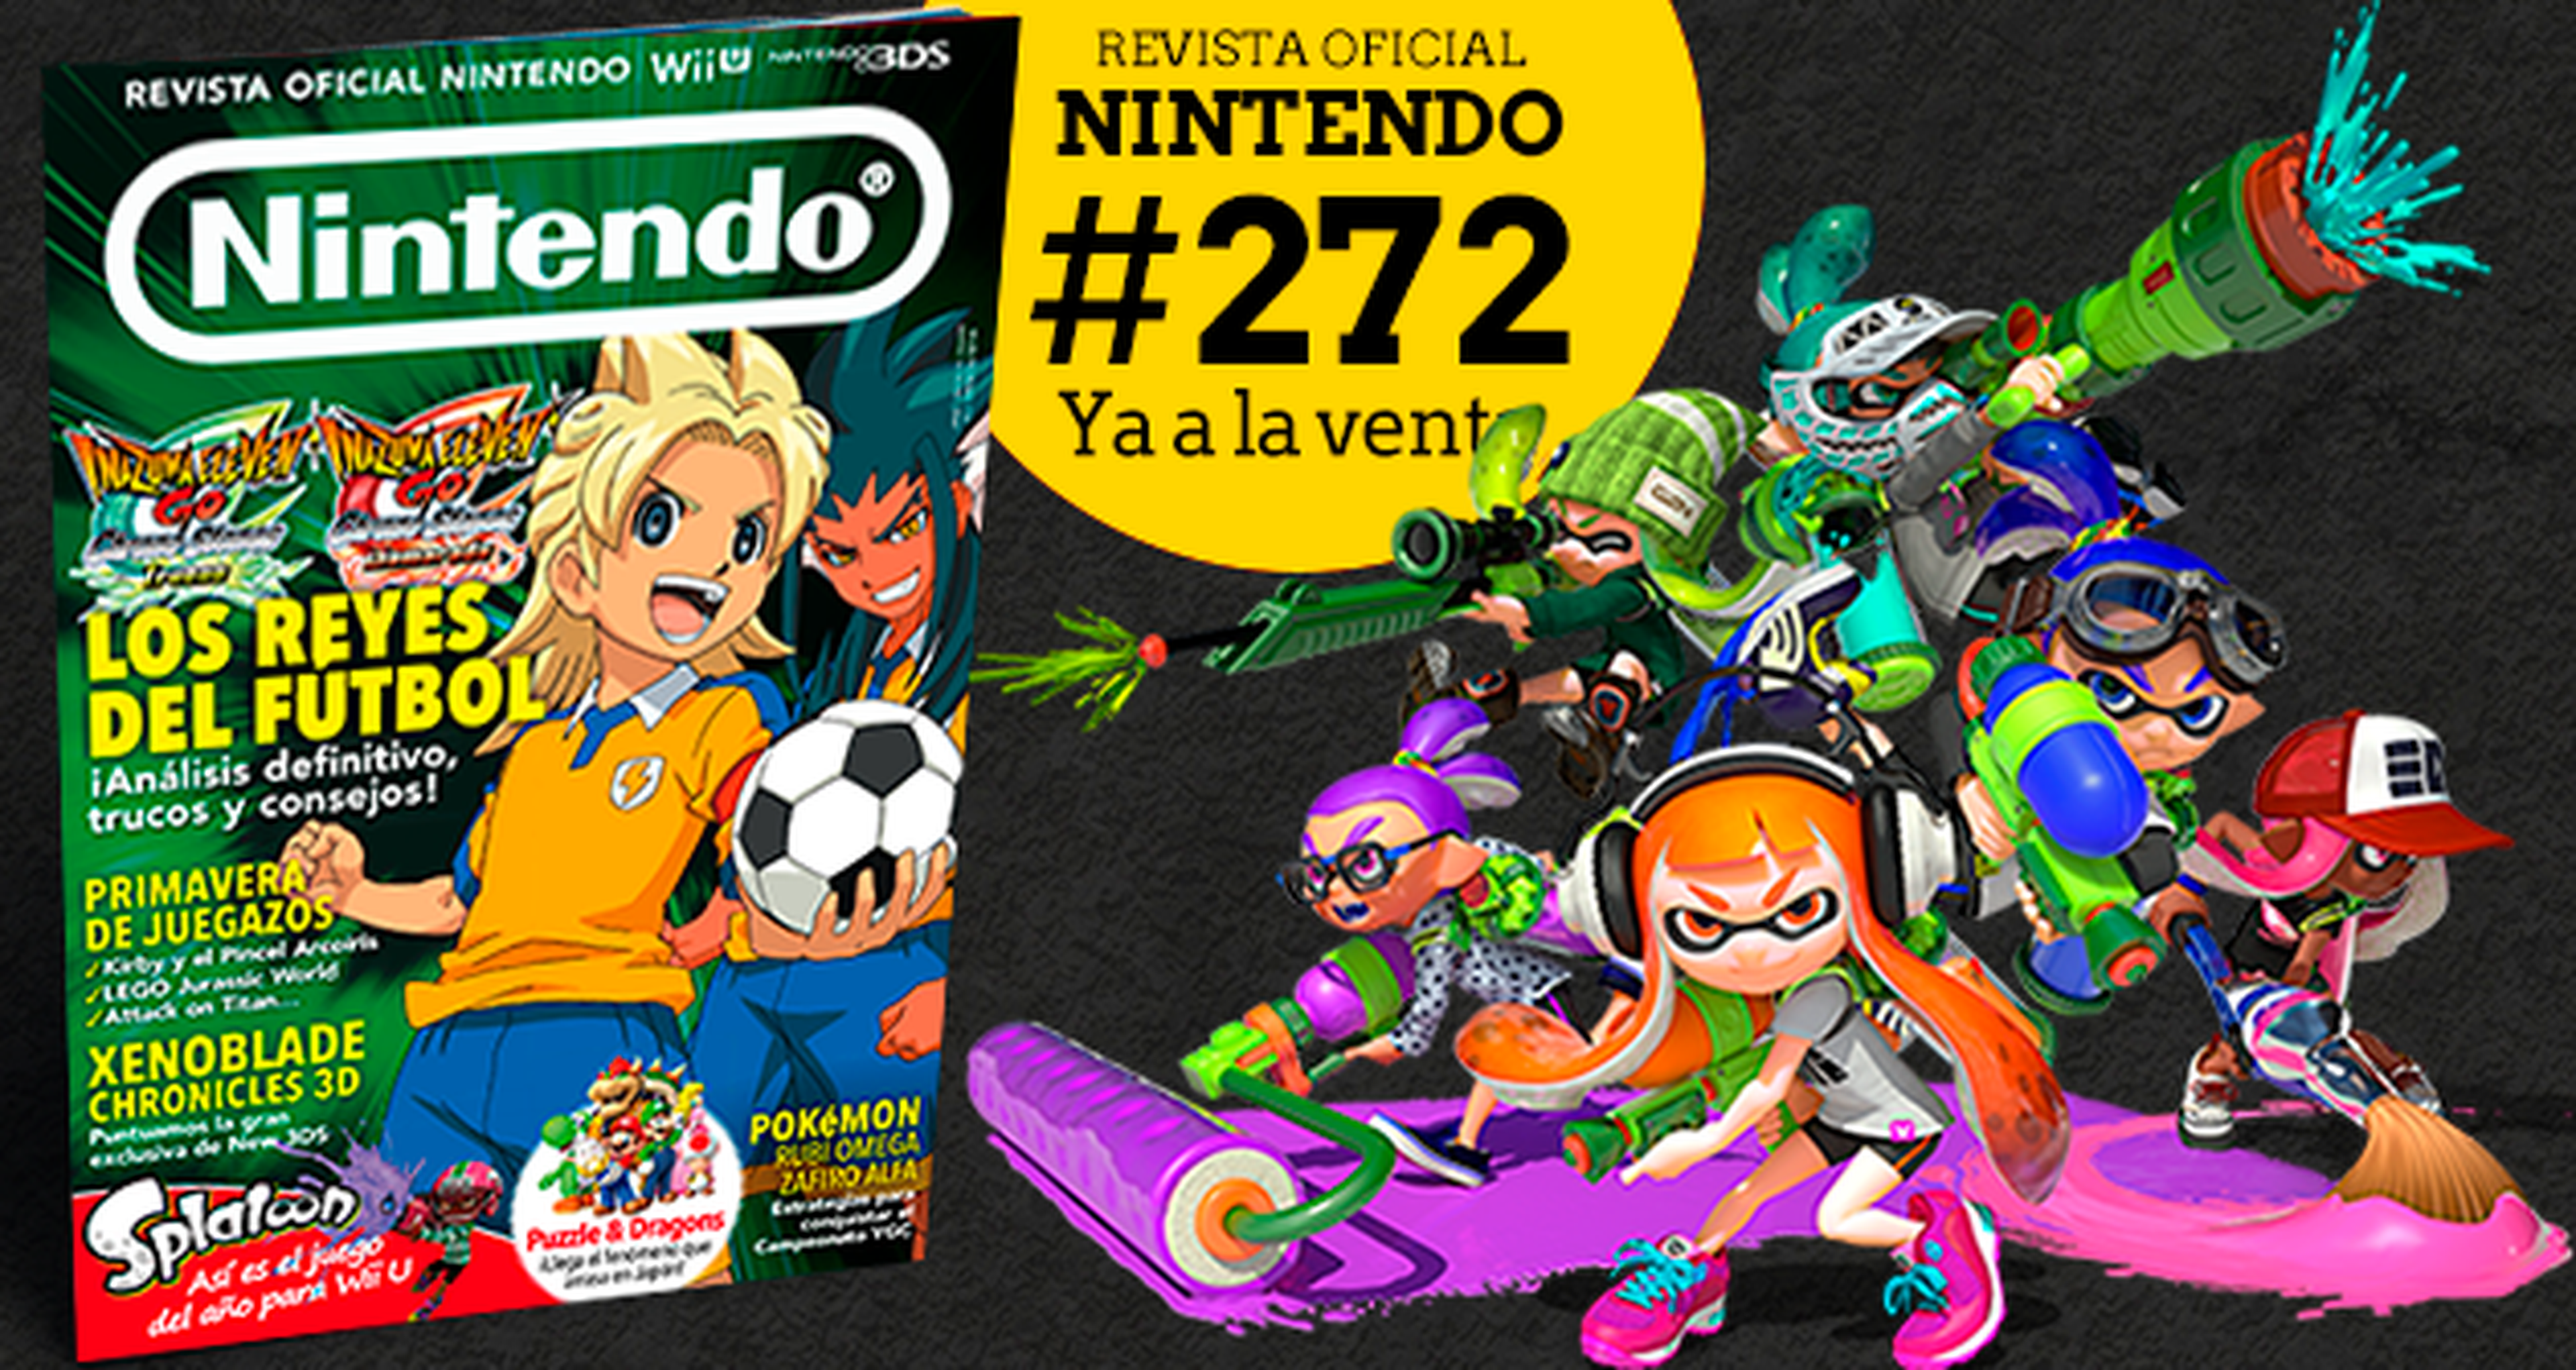 Revista Oficial Nintendo 272, ya a la venta